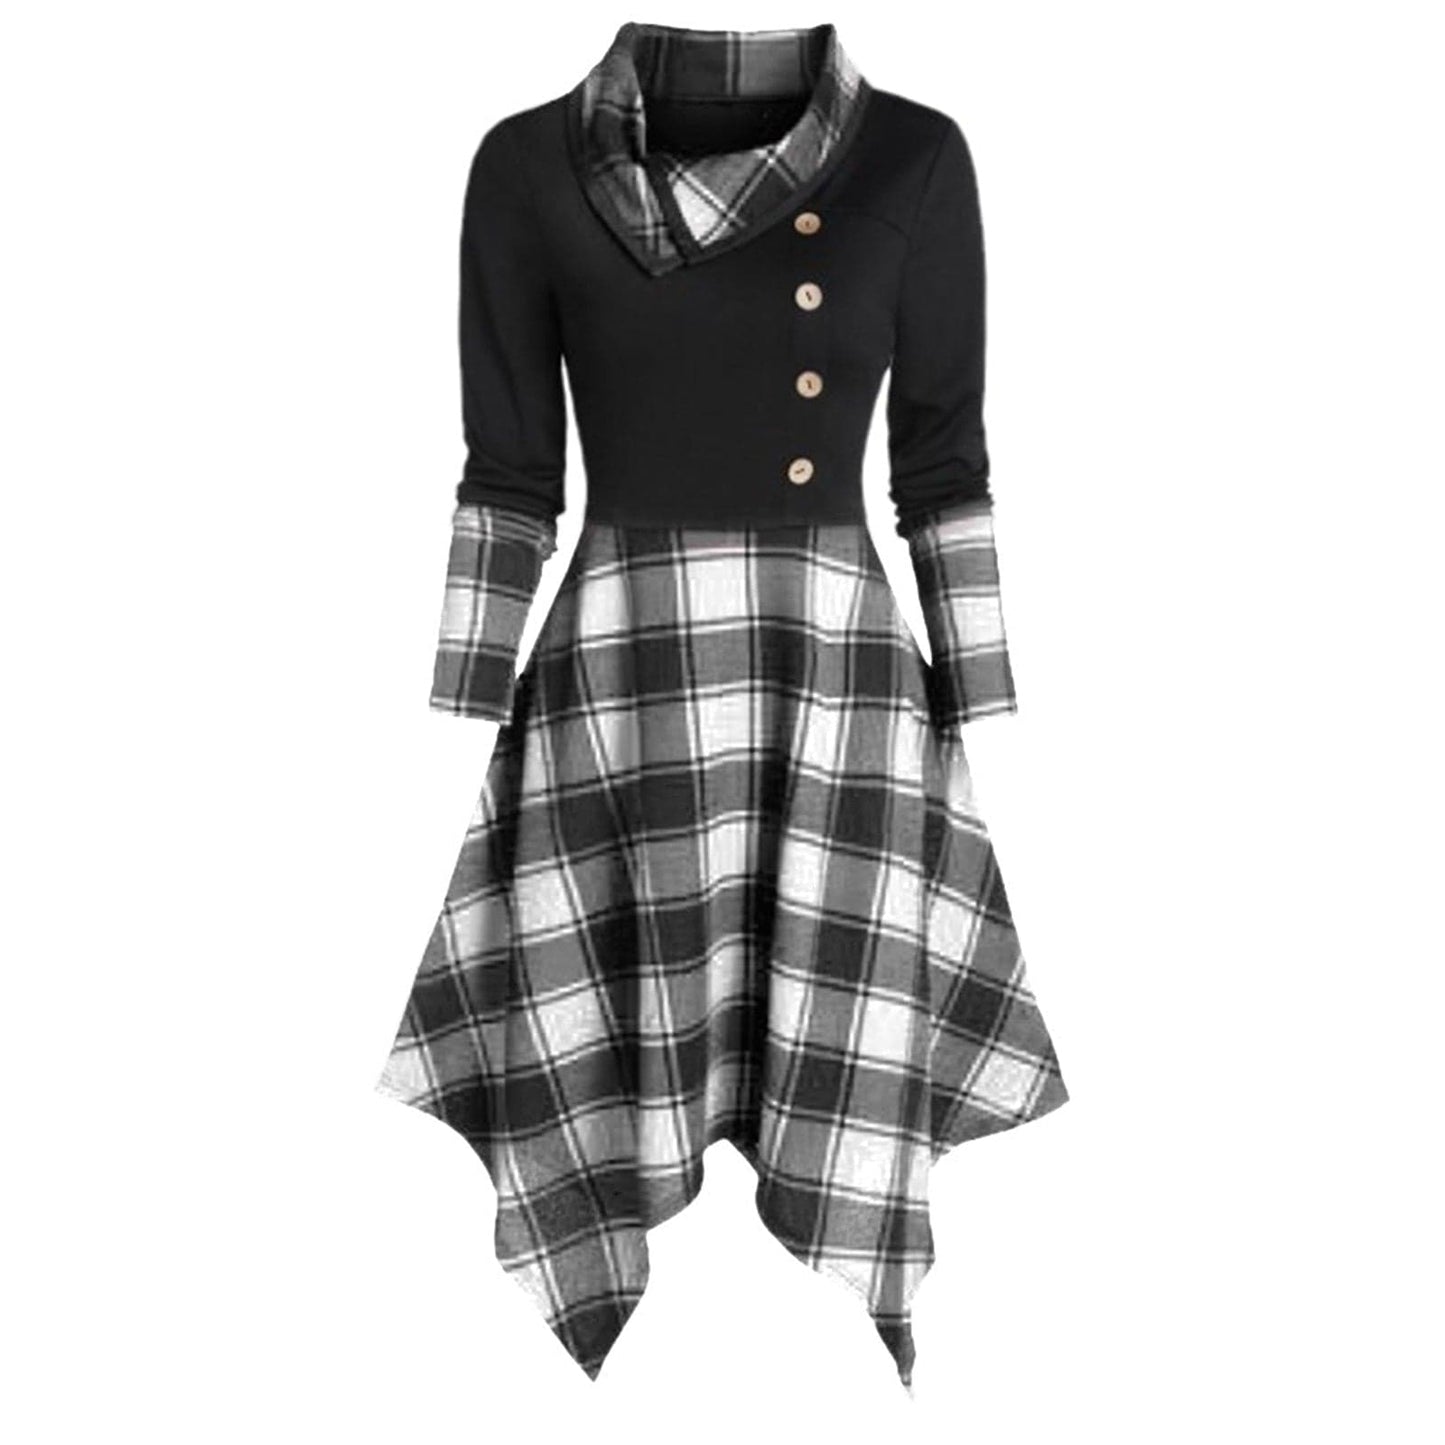 New Punk Gothic Plaid Dress Women Patchwork Button Long Sleeve Irregular Dress Winter Sweatshirt Casual |Dresses|